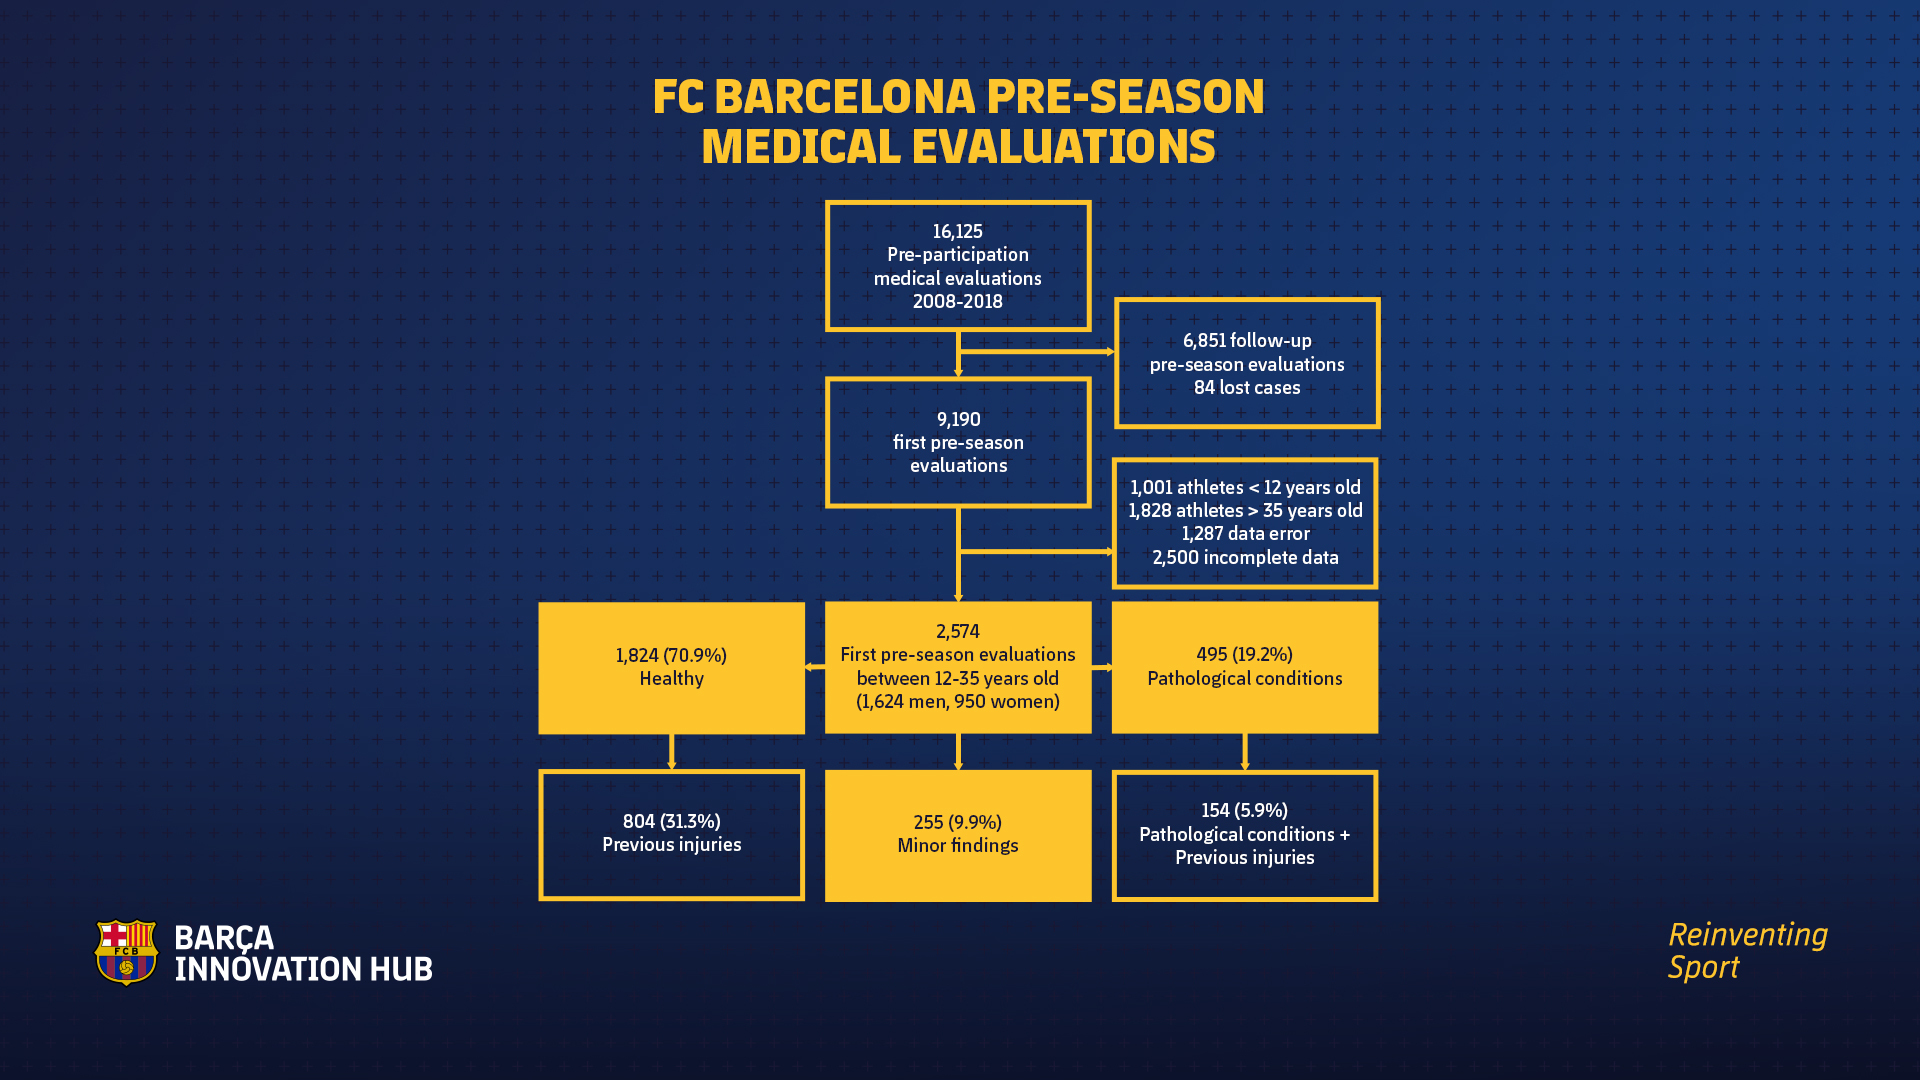 Resultados de las revisiones médicas realizadas por el FC Barcelona durante la pretemporada.